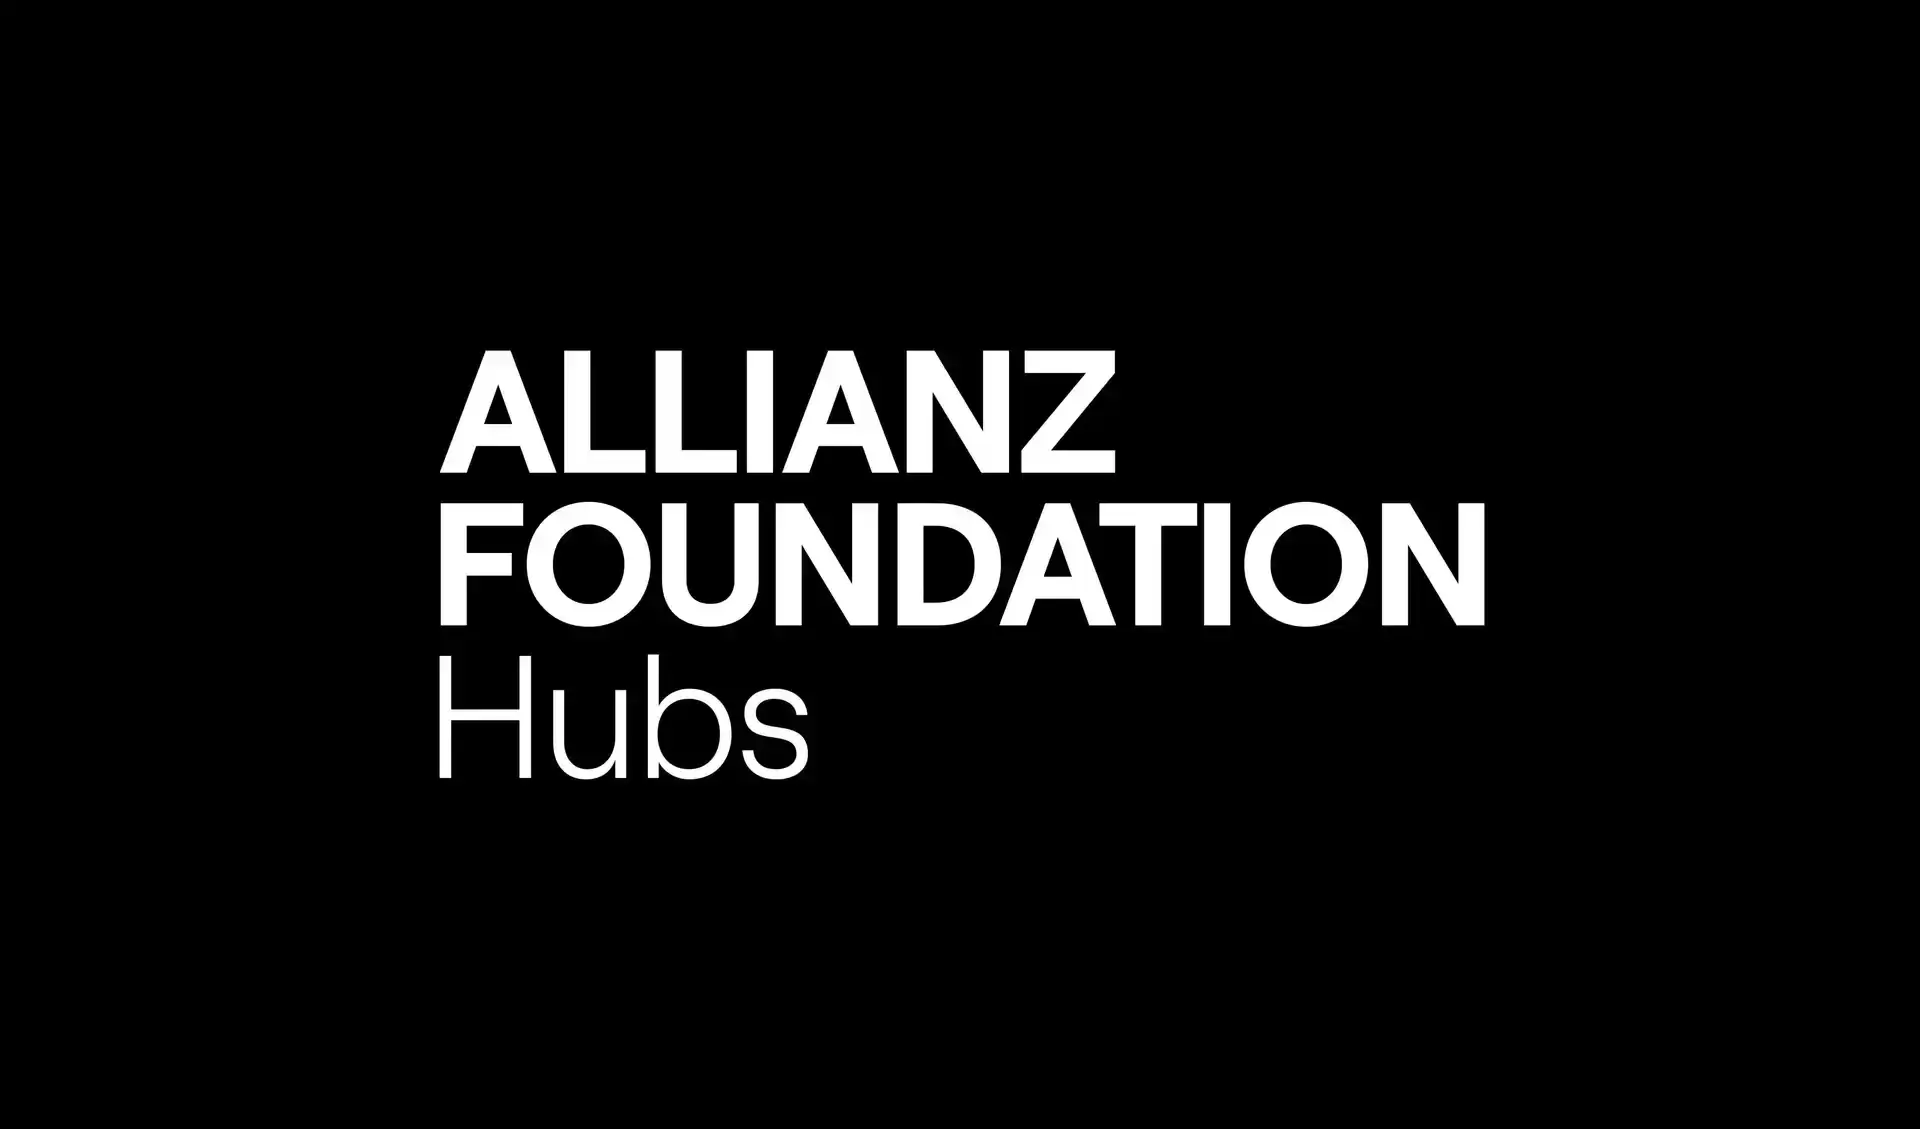 Die Wortmarke der Allianz Foundation Hubs